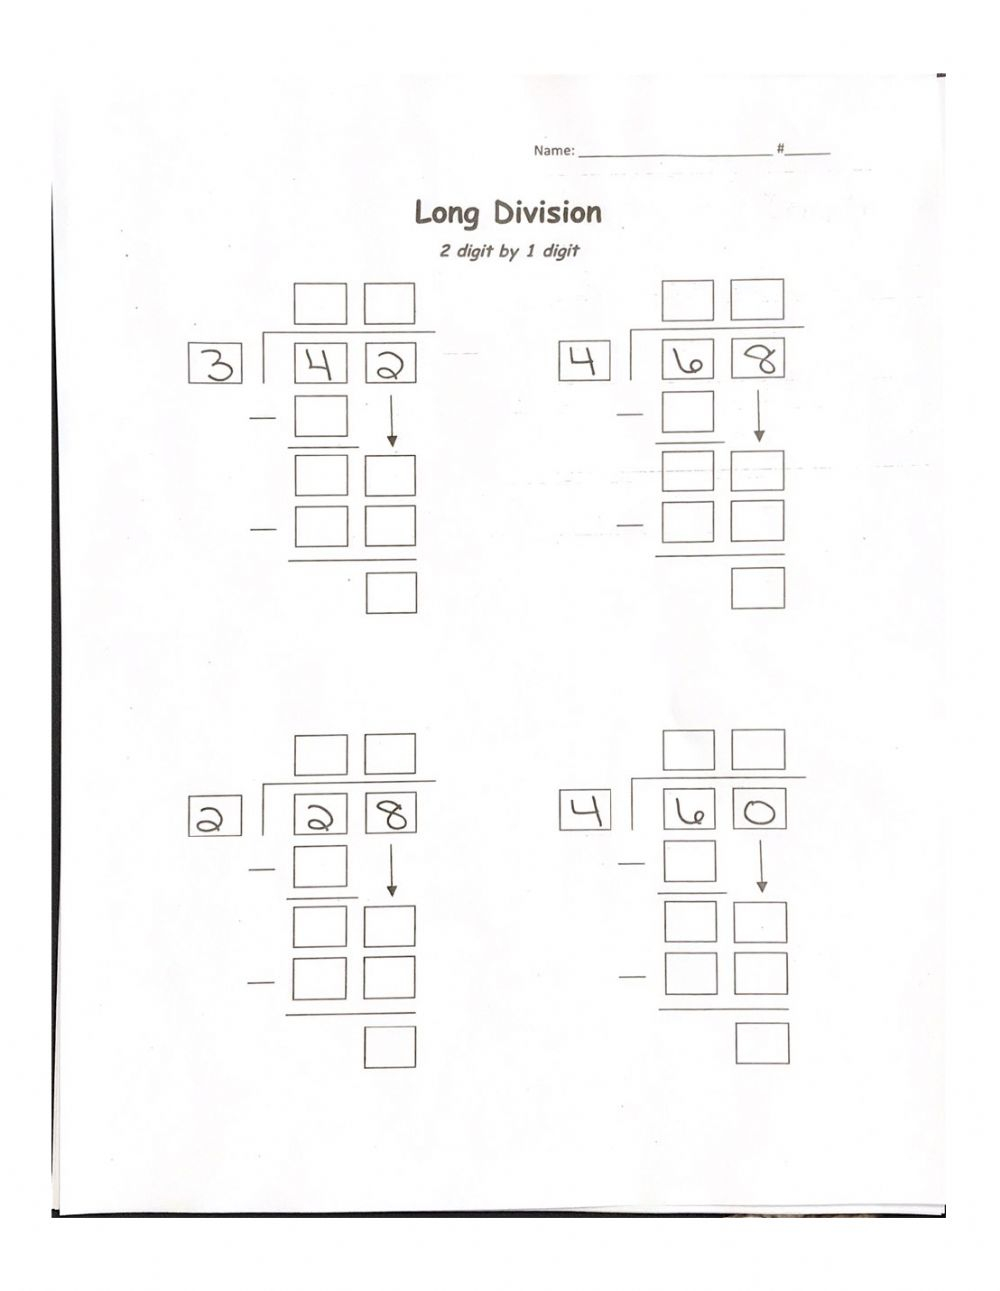 two-digit-long-division-worksheets-divisonworksheets